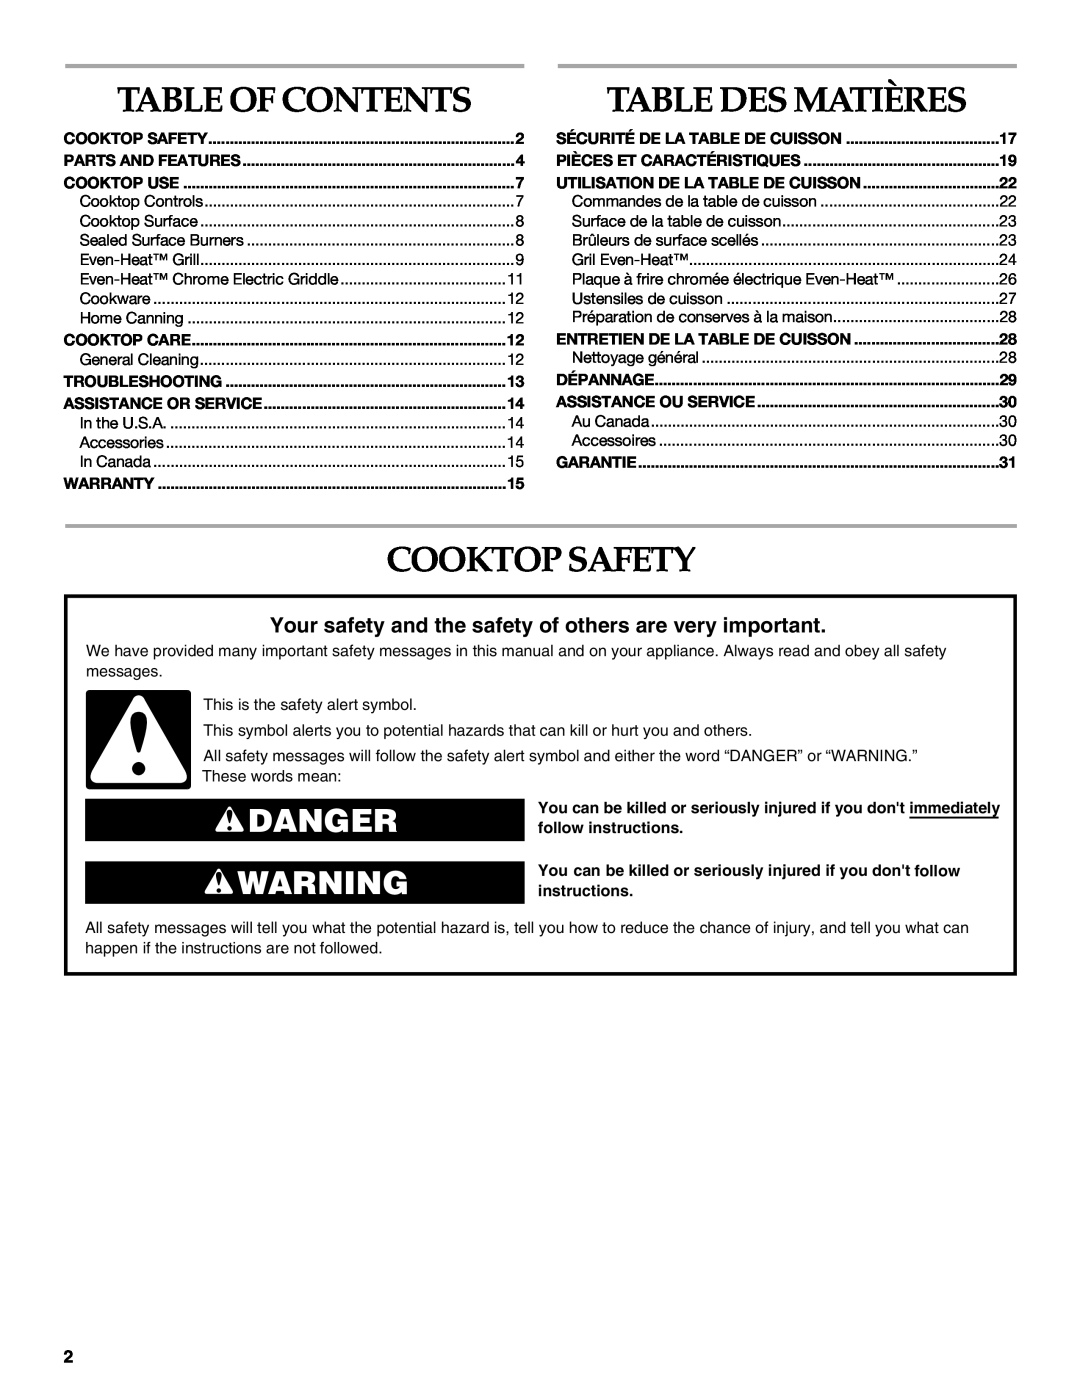 KitchenAid KGCU483VSS manual Table Des Matières, Cooktop Safety, Danger, Table Of Contents 